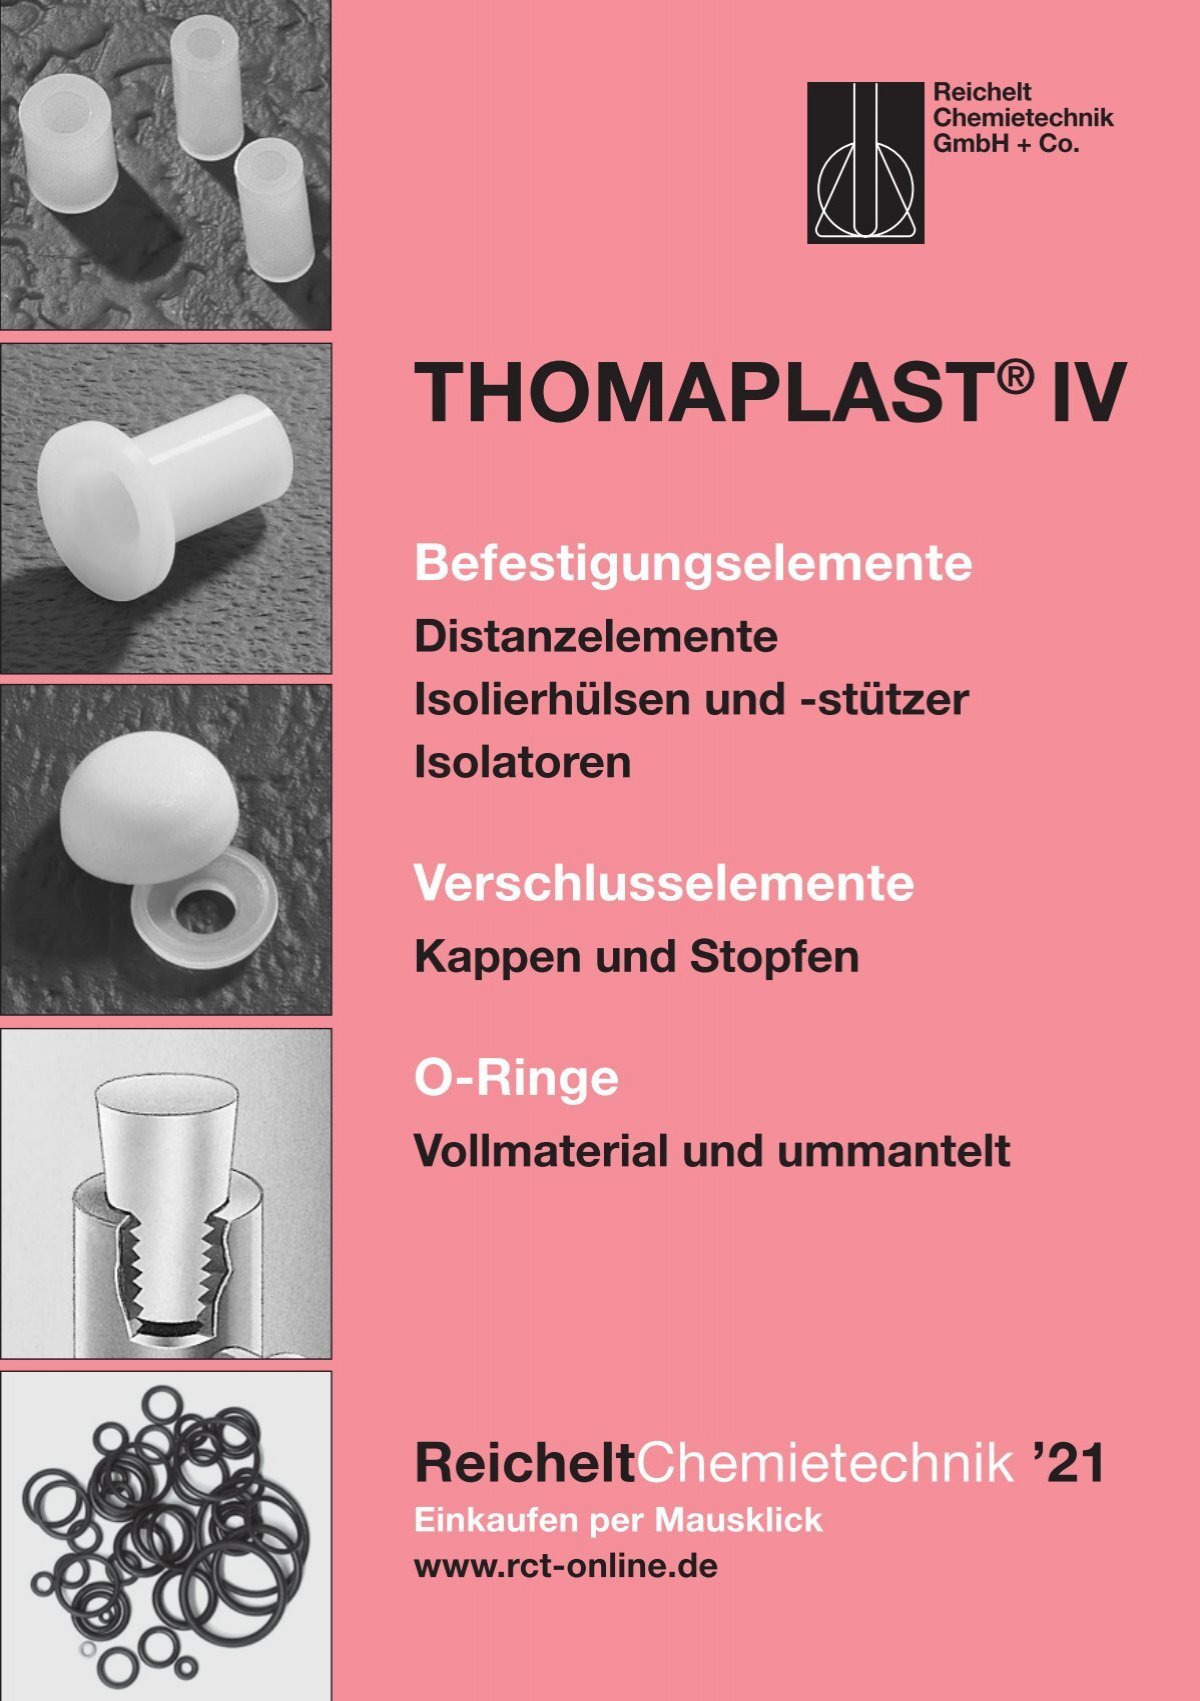 RCT Reichelt Chemietechnik GmbH + Co. - Thomaplast IV